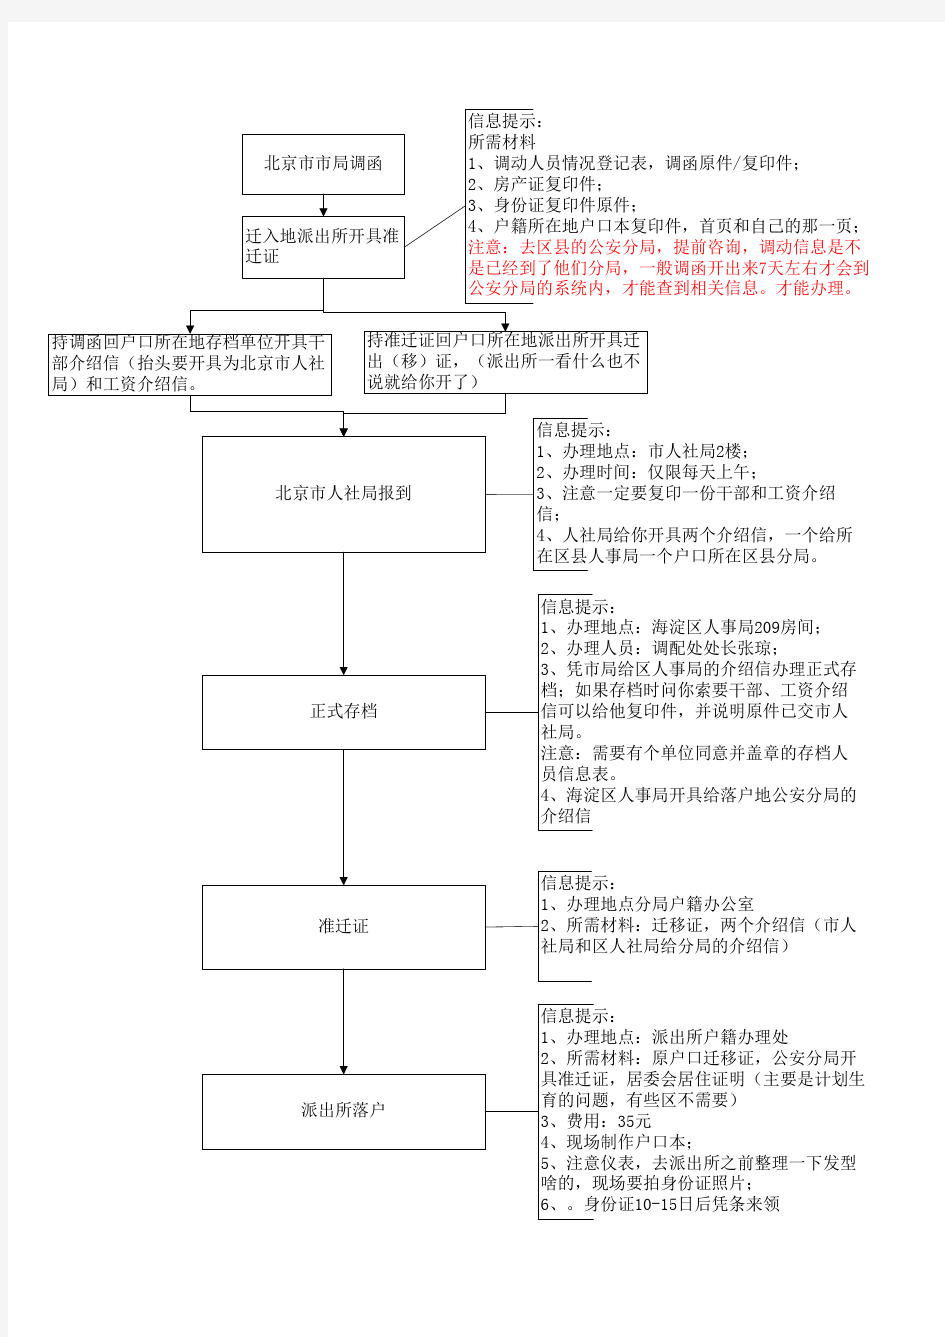 2010北京人才引进落户流程图